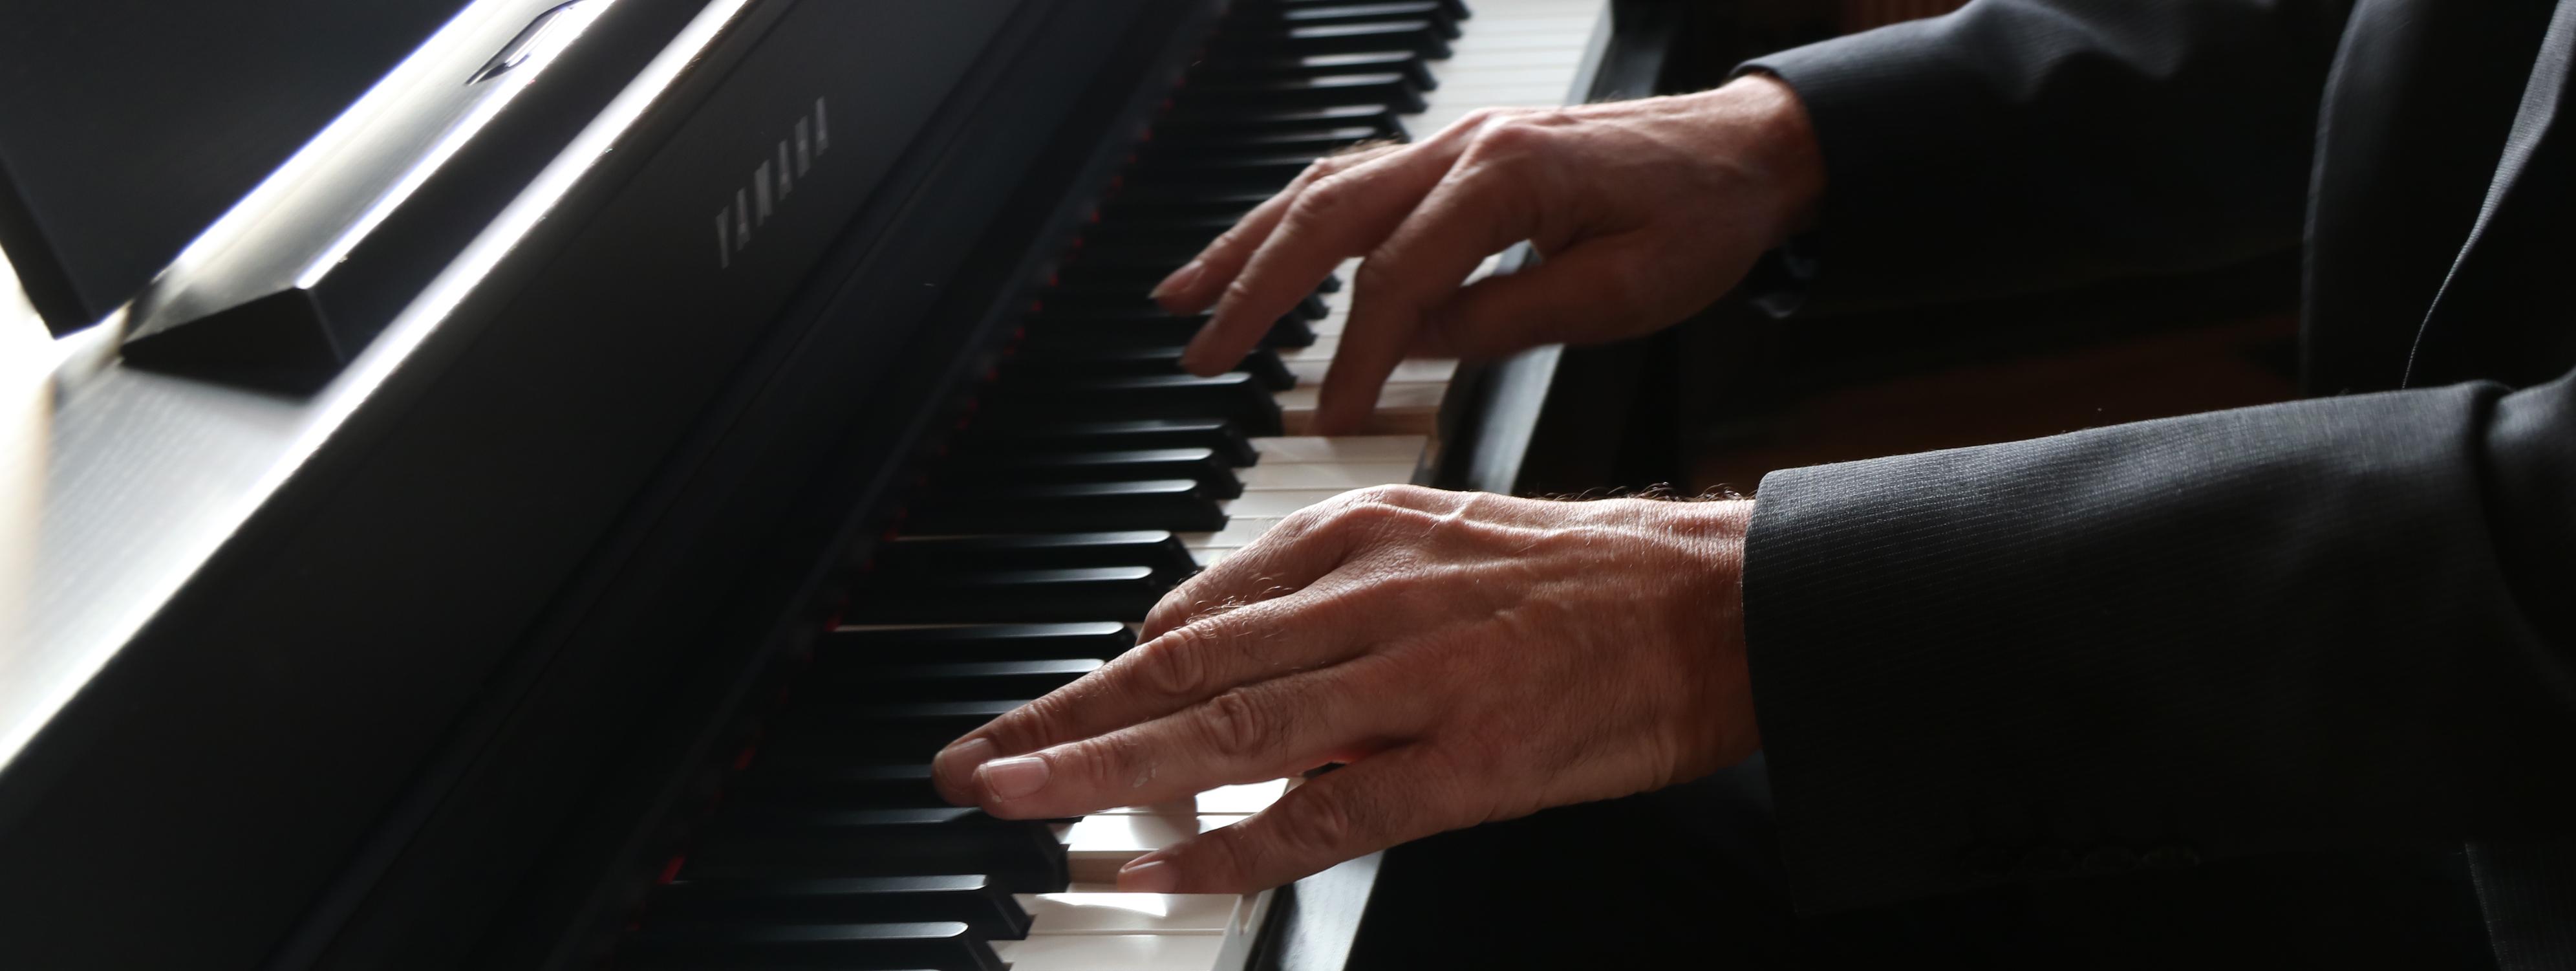 Zu sehen sind die schwarzen und weißen Tasten eines Klaviers und die Hände des Klavierspielers.